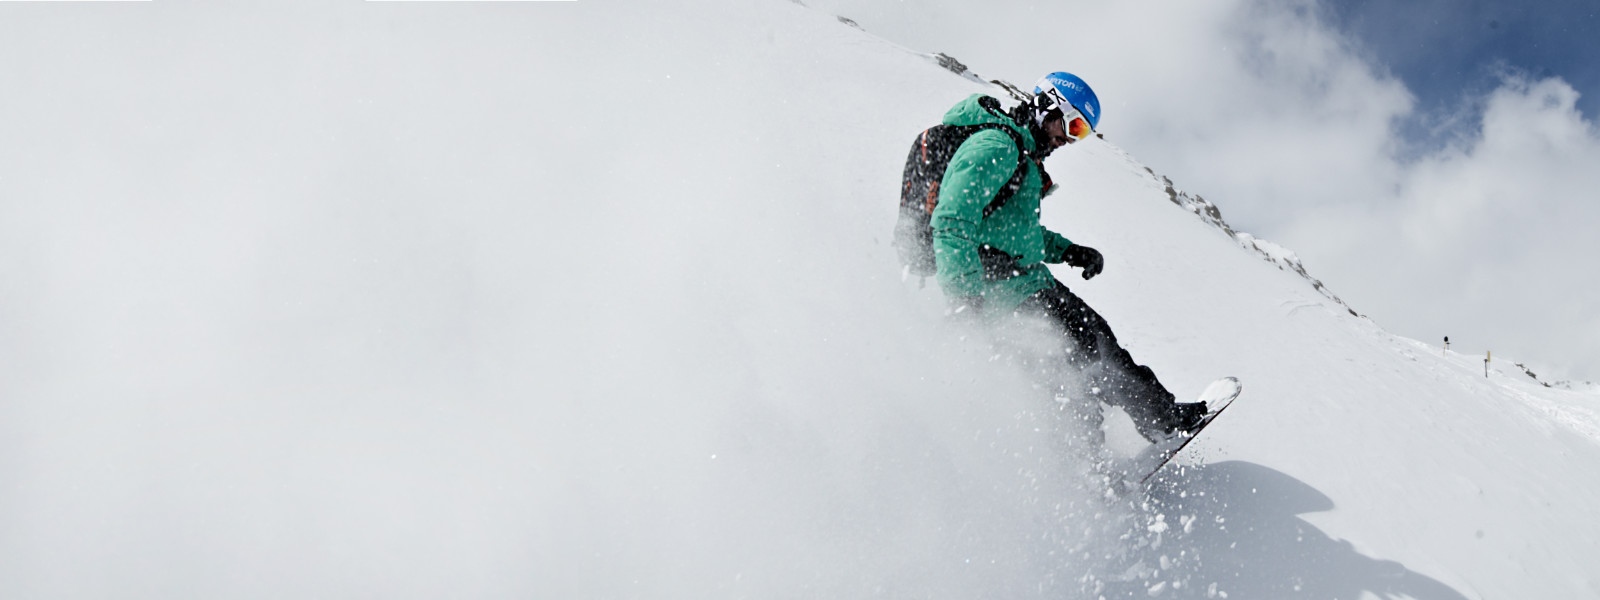 Snowboarder mit grüner Jacke wirbelt beim Bremsen Schnee auf	 der die komplette linke Bildseite weiß färbt